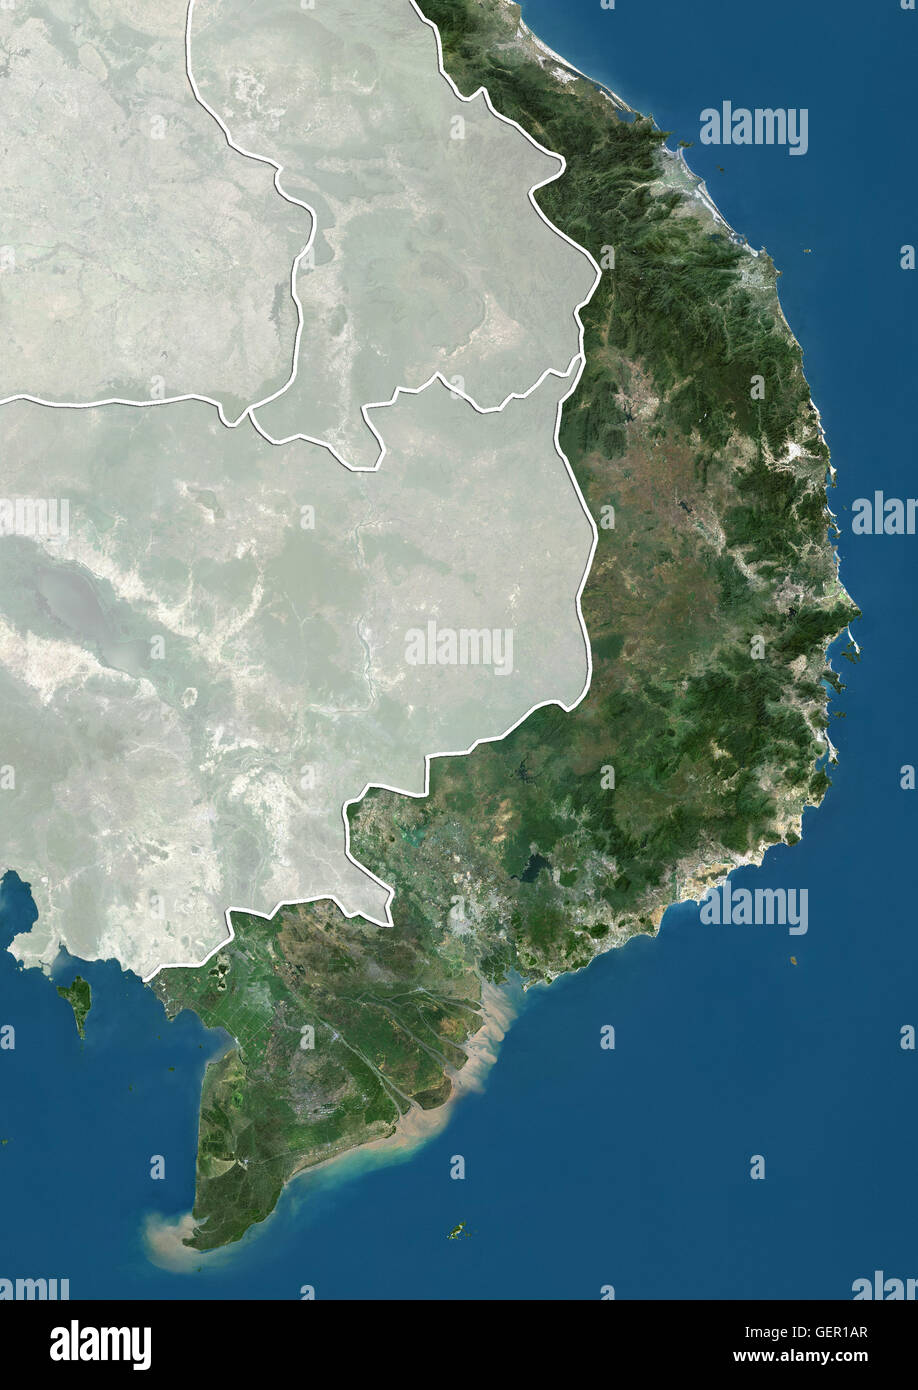 Vue du sud du Vietnam (avec des frontières et masque). Cette image a été compilé à partir de données acquises par les satellites Landsat. Banque D'Images